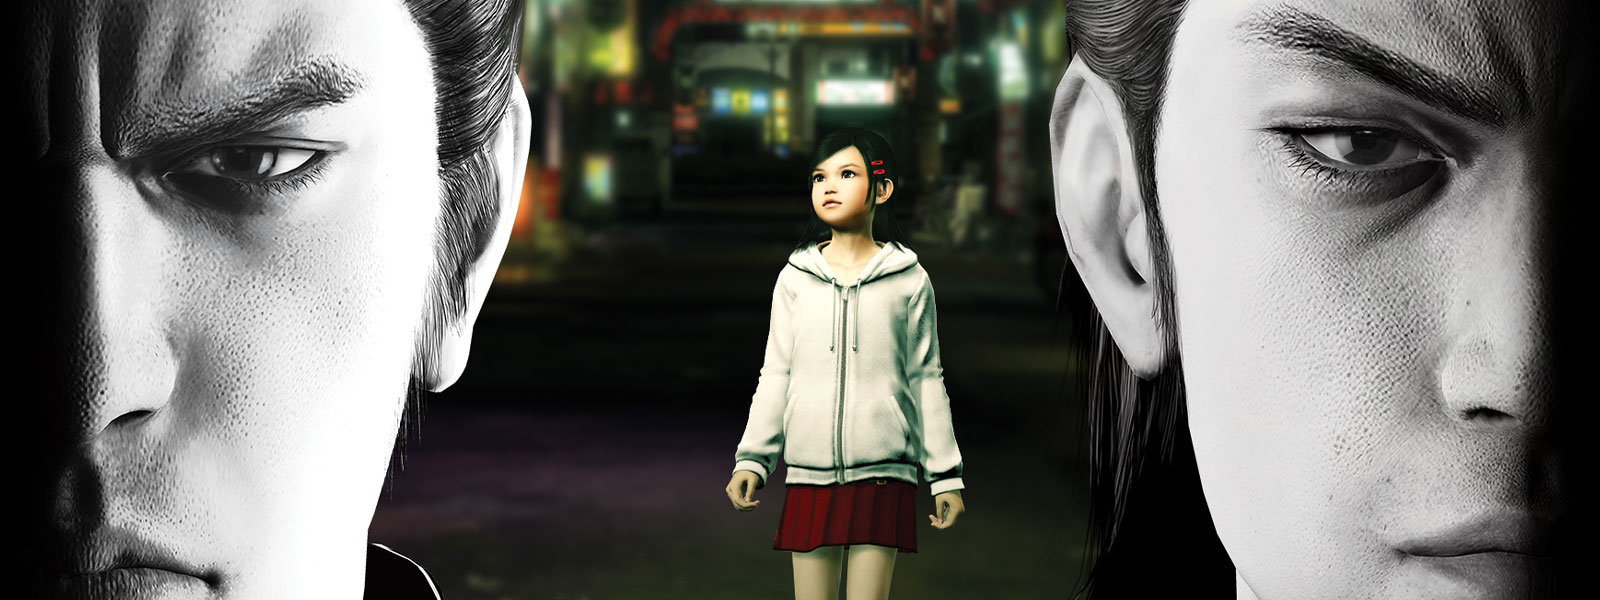 Zwei Yakuza-Figuren starren düster nach vorne, während ein kleines Mädchen in der Stadt hinter ihnen steht.